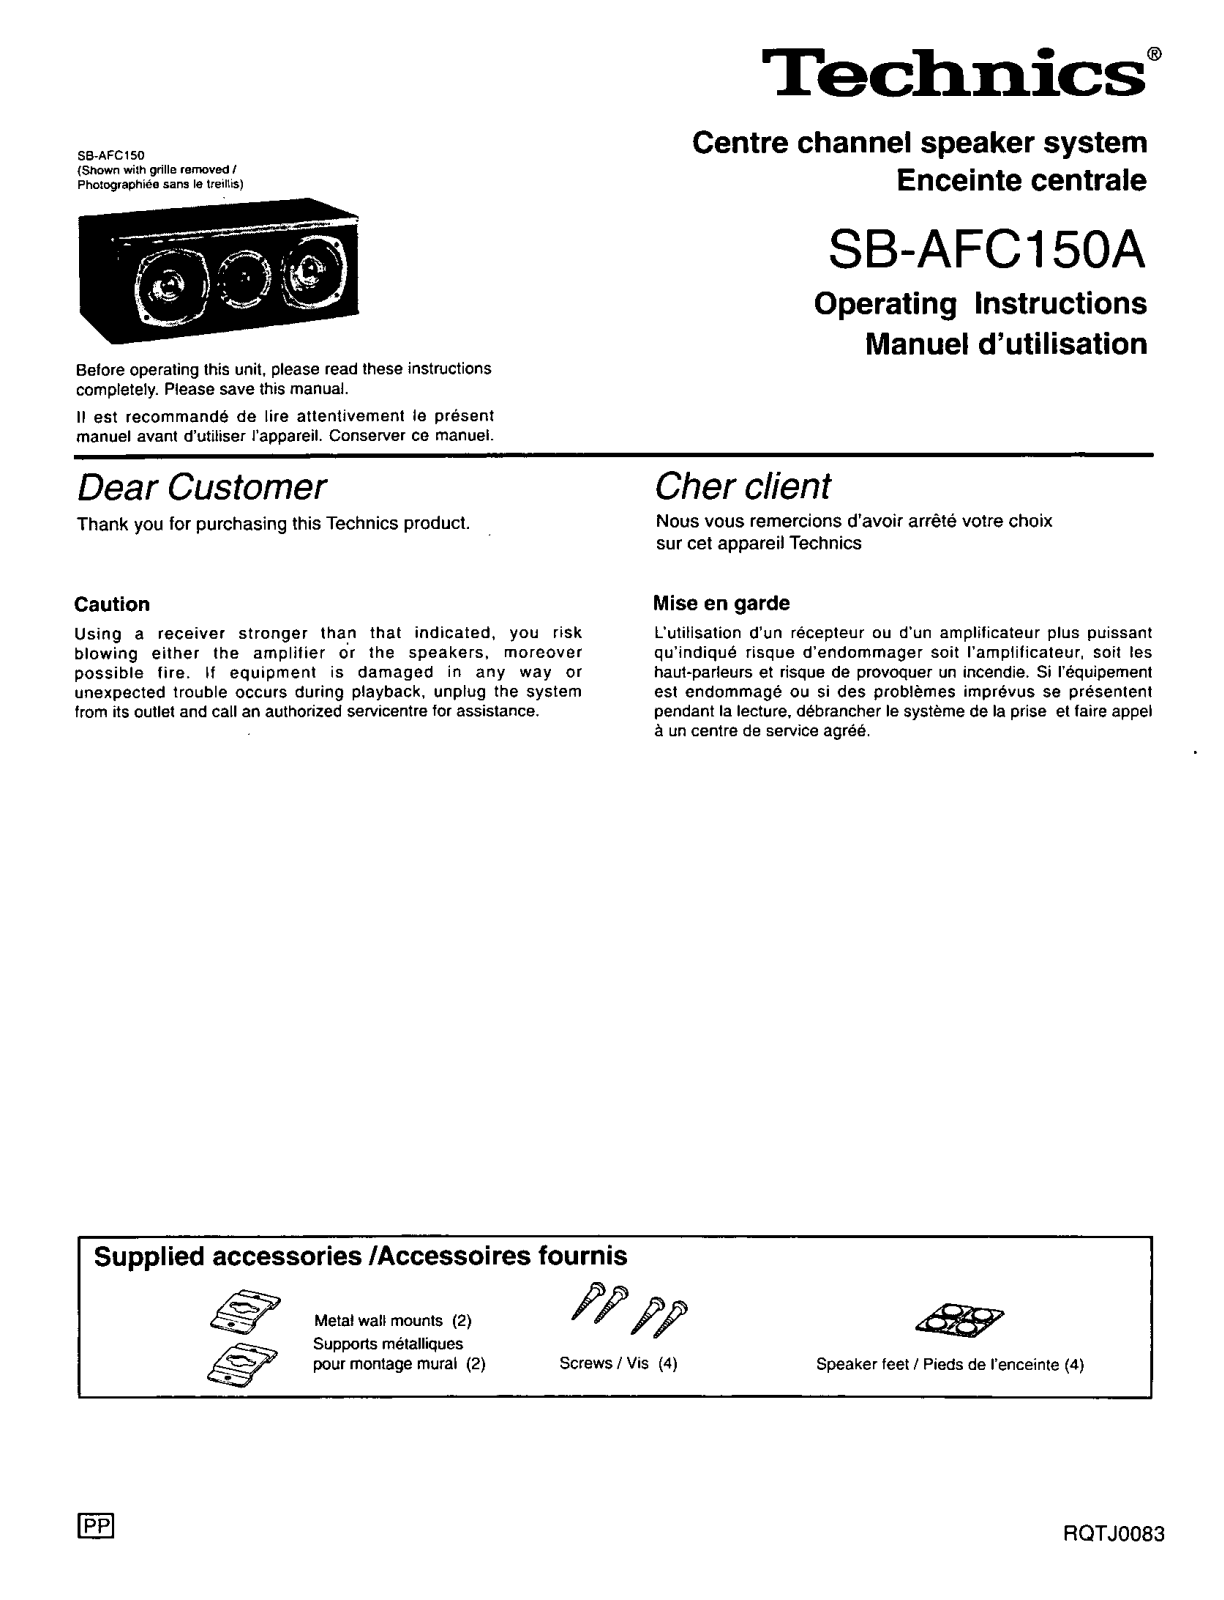 Technics SB-AFC150A User Manual